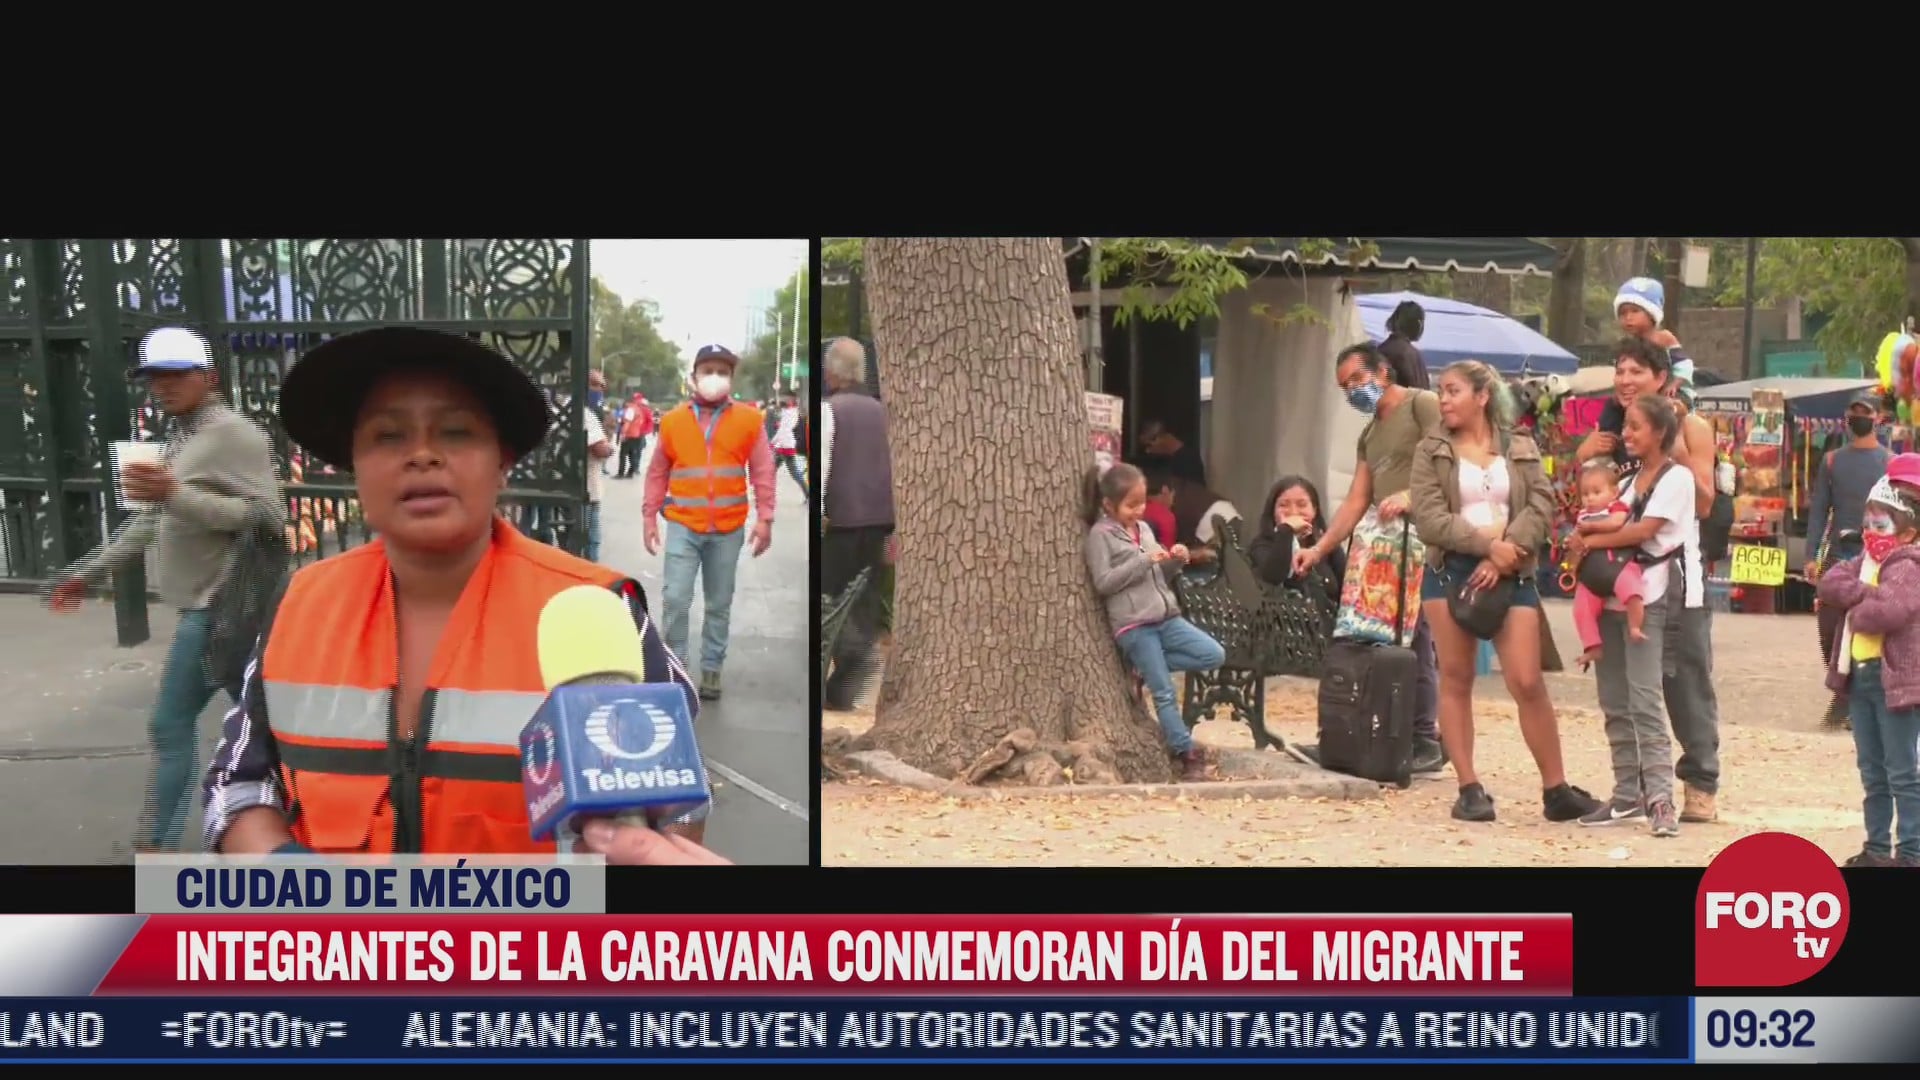 miembros de caravana conmemoran dia del migrante con visita al bosque de chapultepec